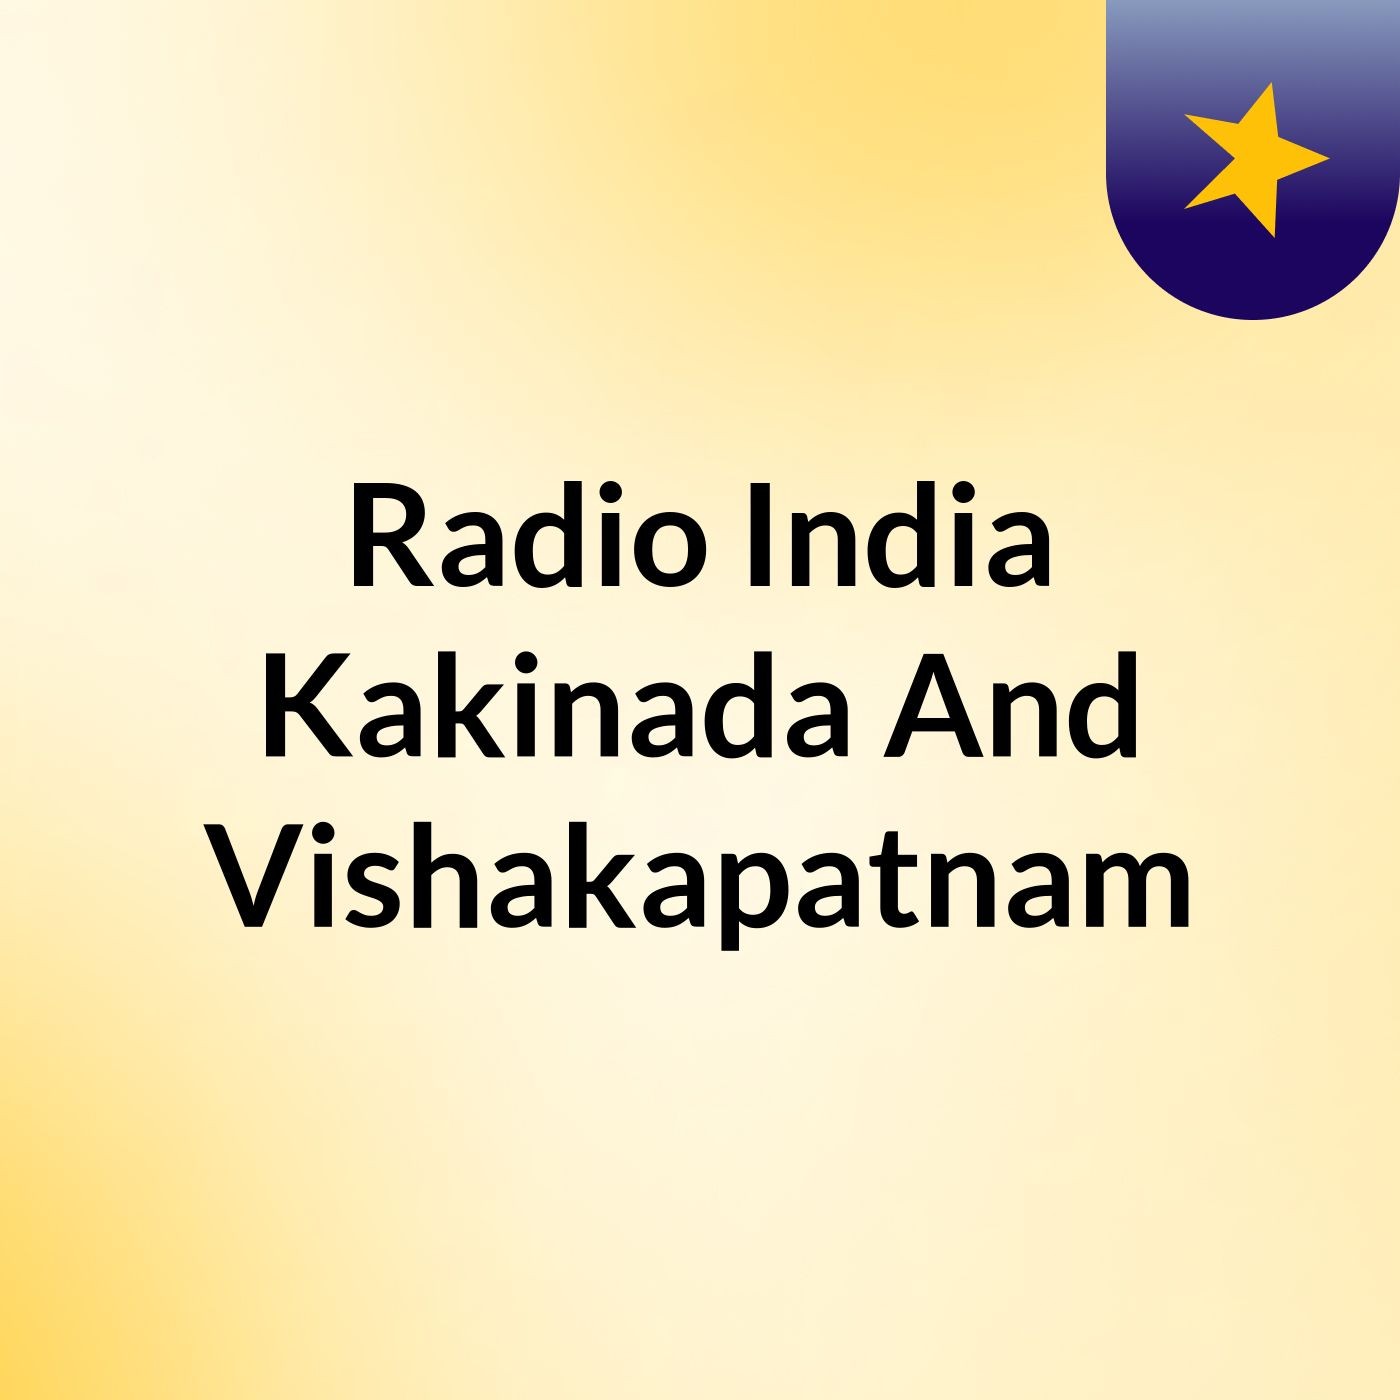 Radio India Kakinada And Vishakhapatnam